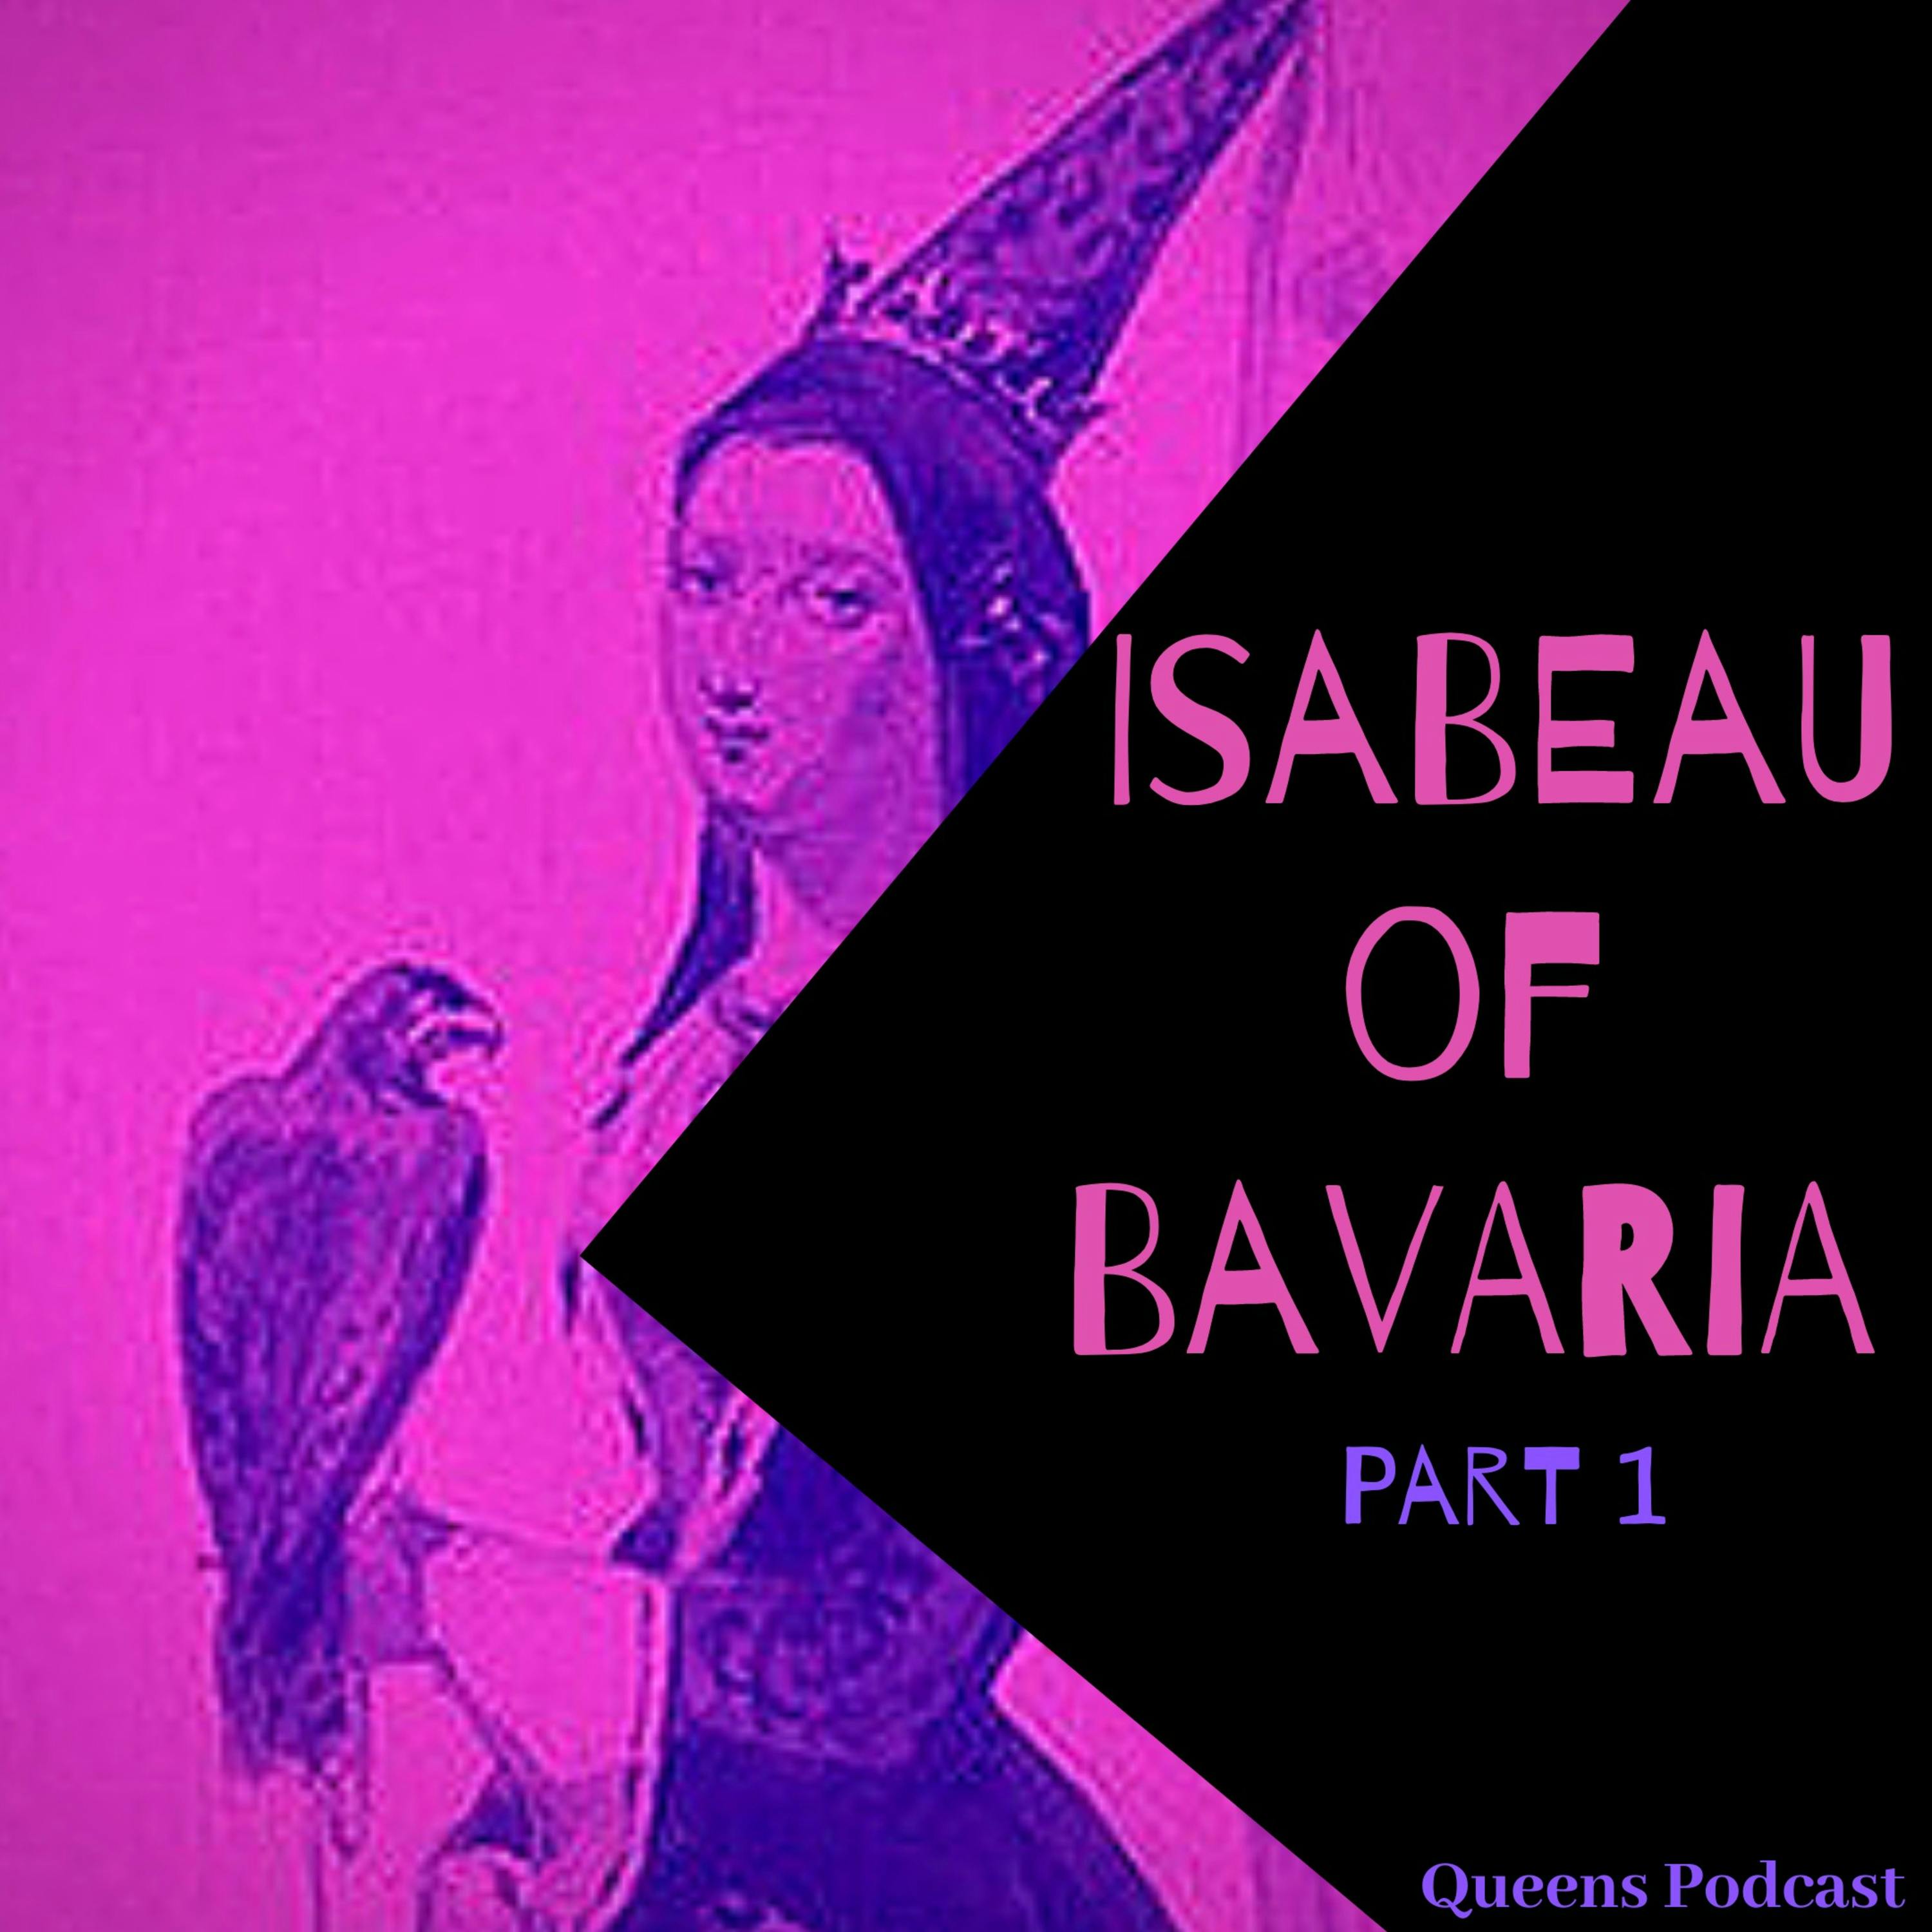 Isabeau of Bavaria, part 1